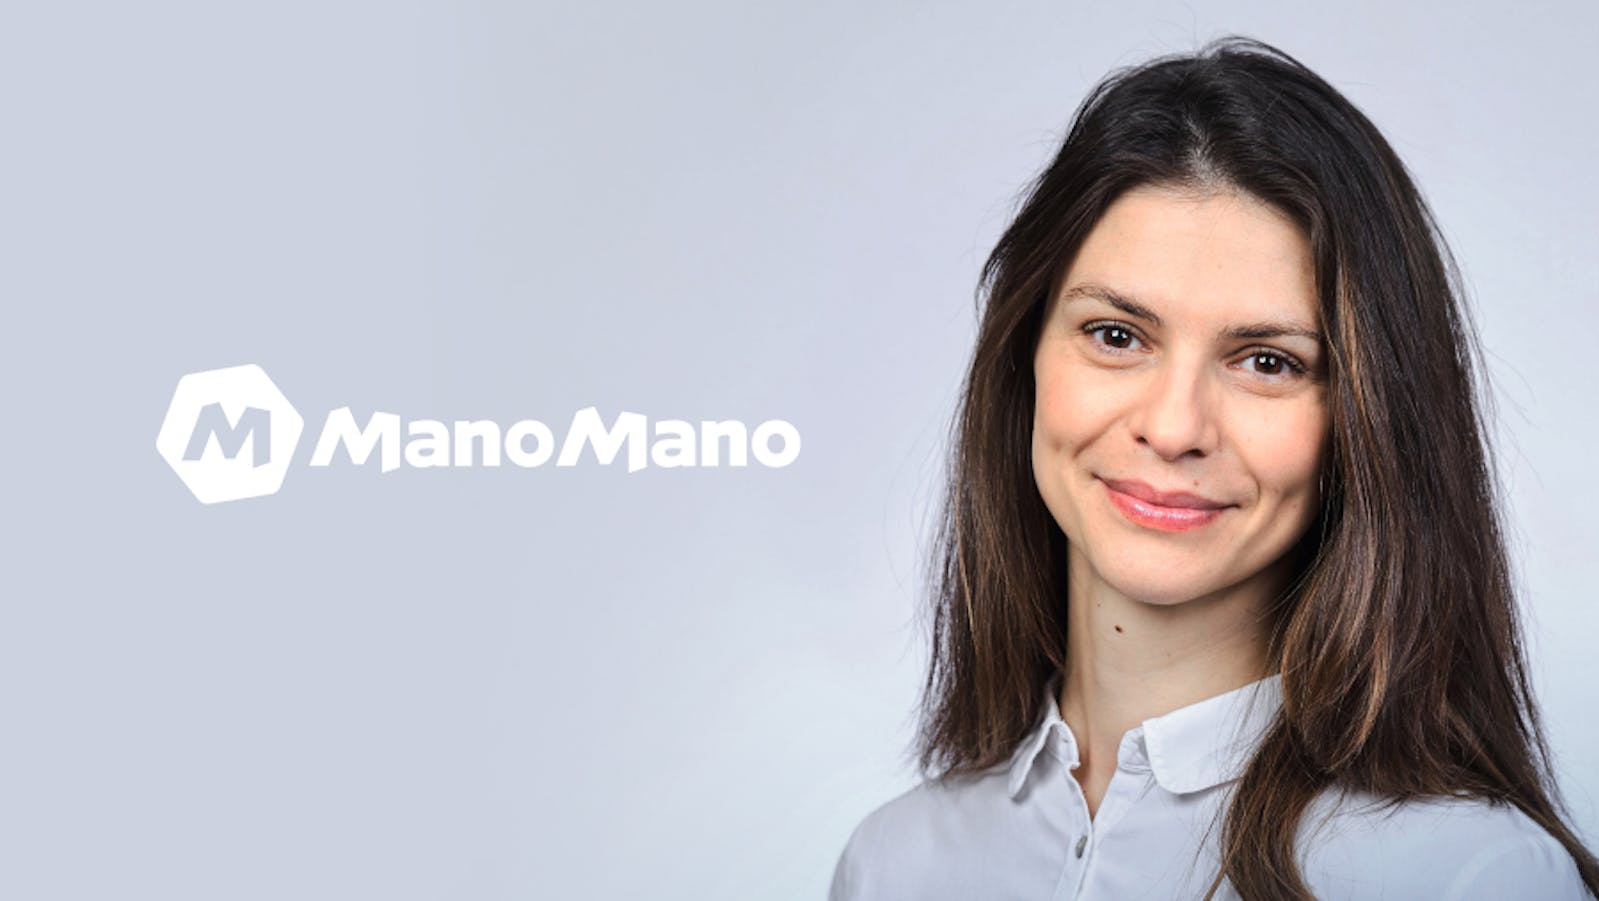 Read full post: ManoMano, ou comment mettre l’humain au centre des expériences client digitales